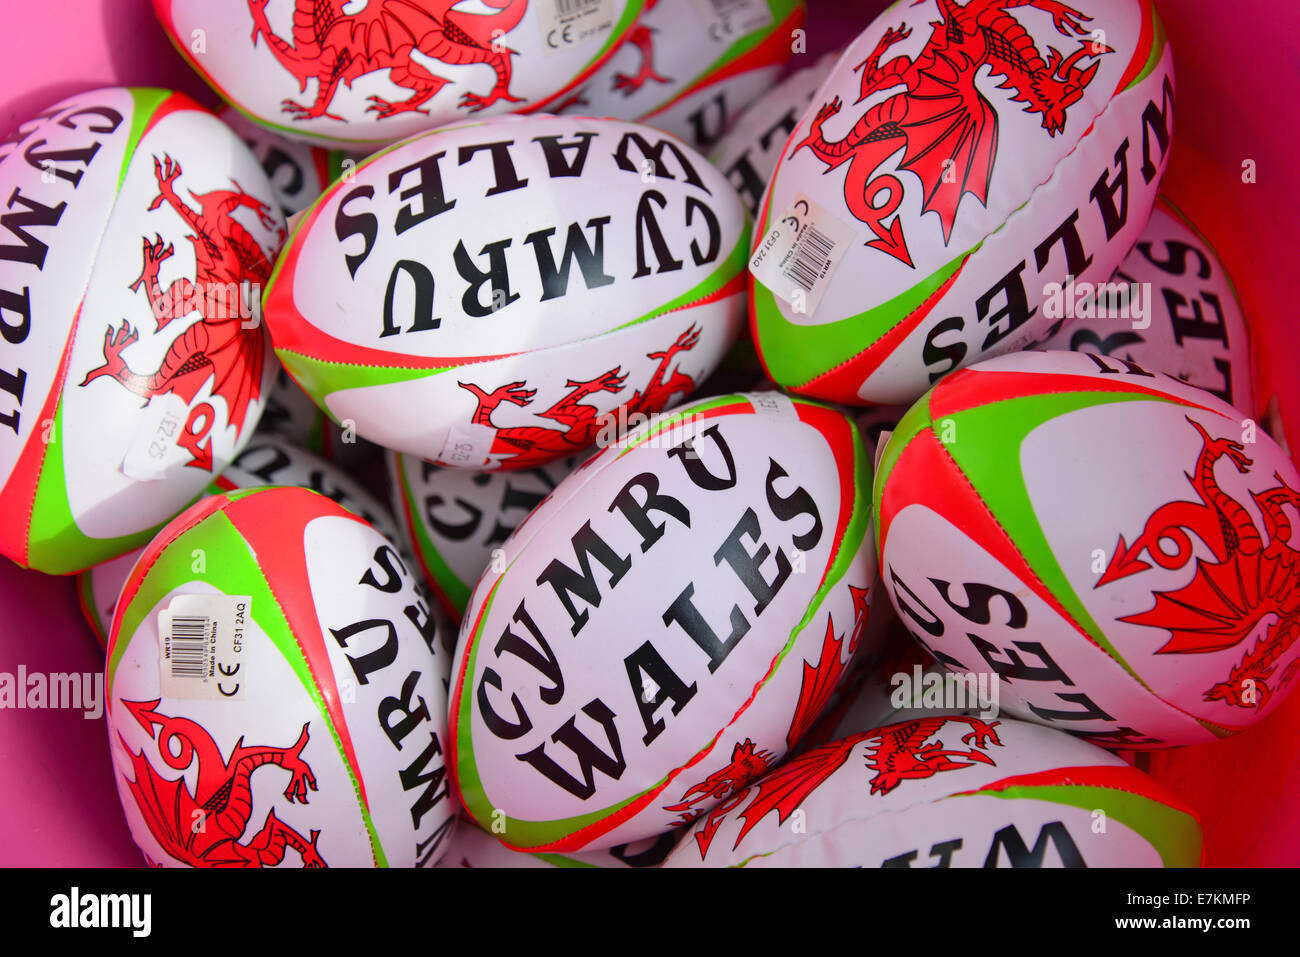 Ballons de rugby souvenirs gallois, Conwy, comté de Conwy, Pays de Galles, Royaume-Uni Banque D'Images